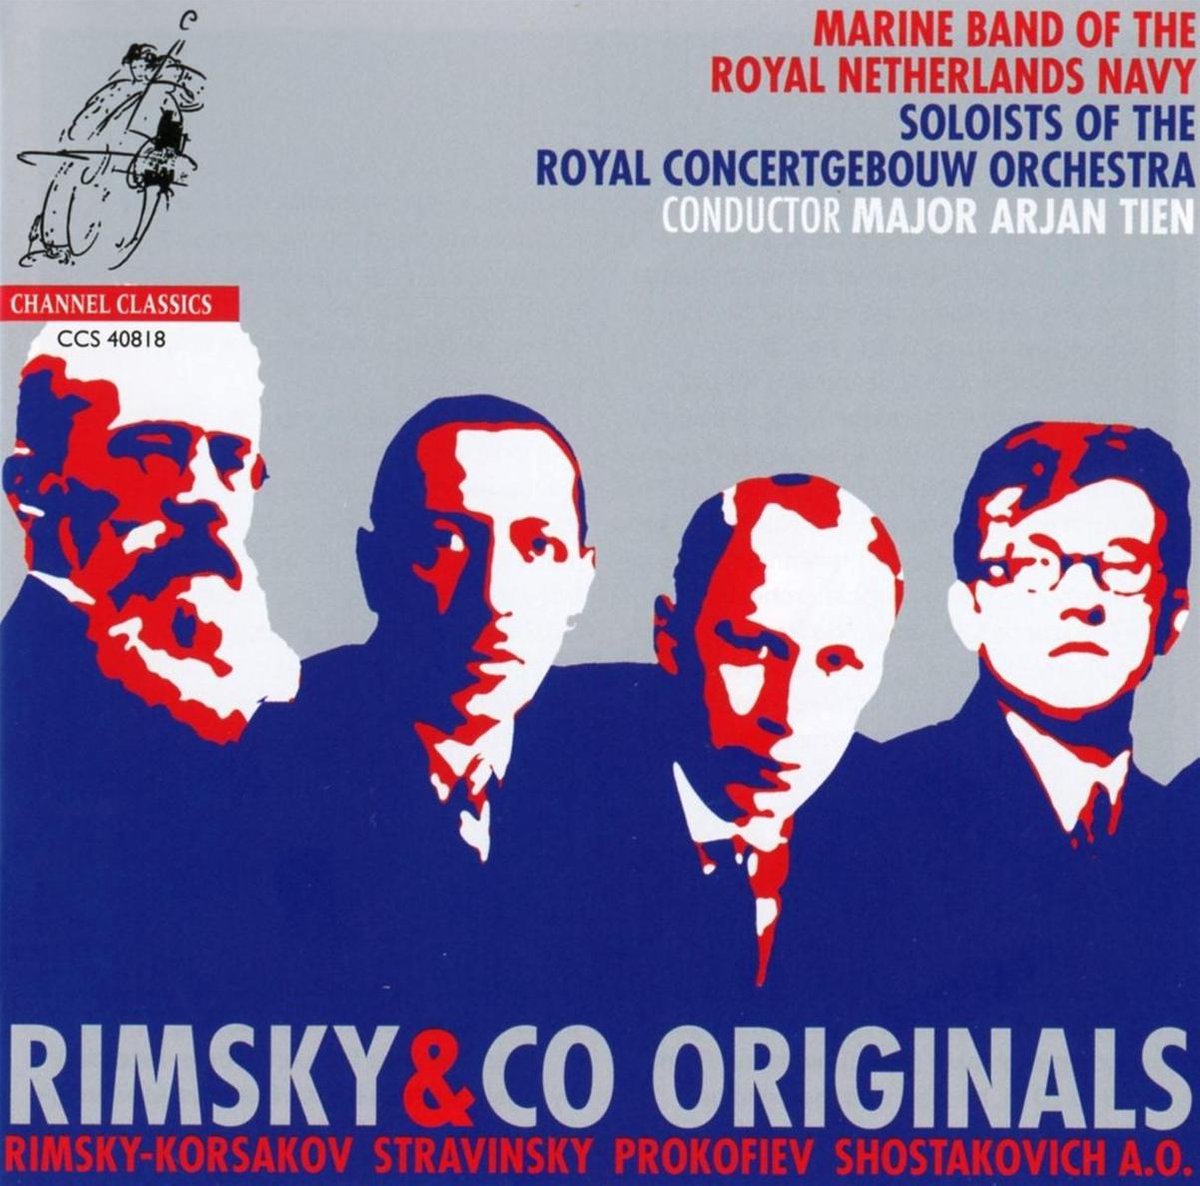 Rimsky & Co Originals - Marinierskapel der Koninklijke Mari